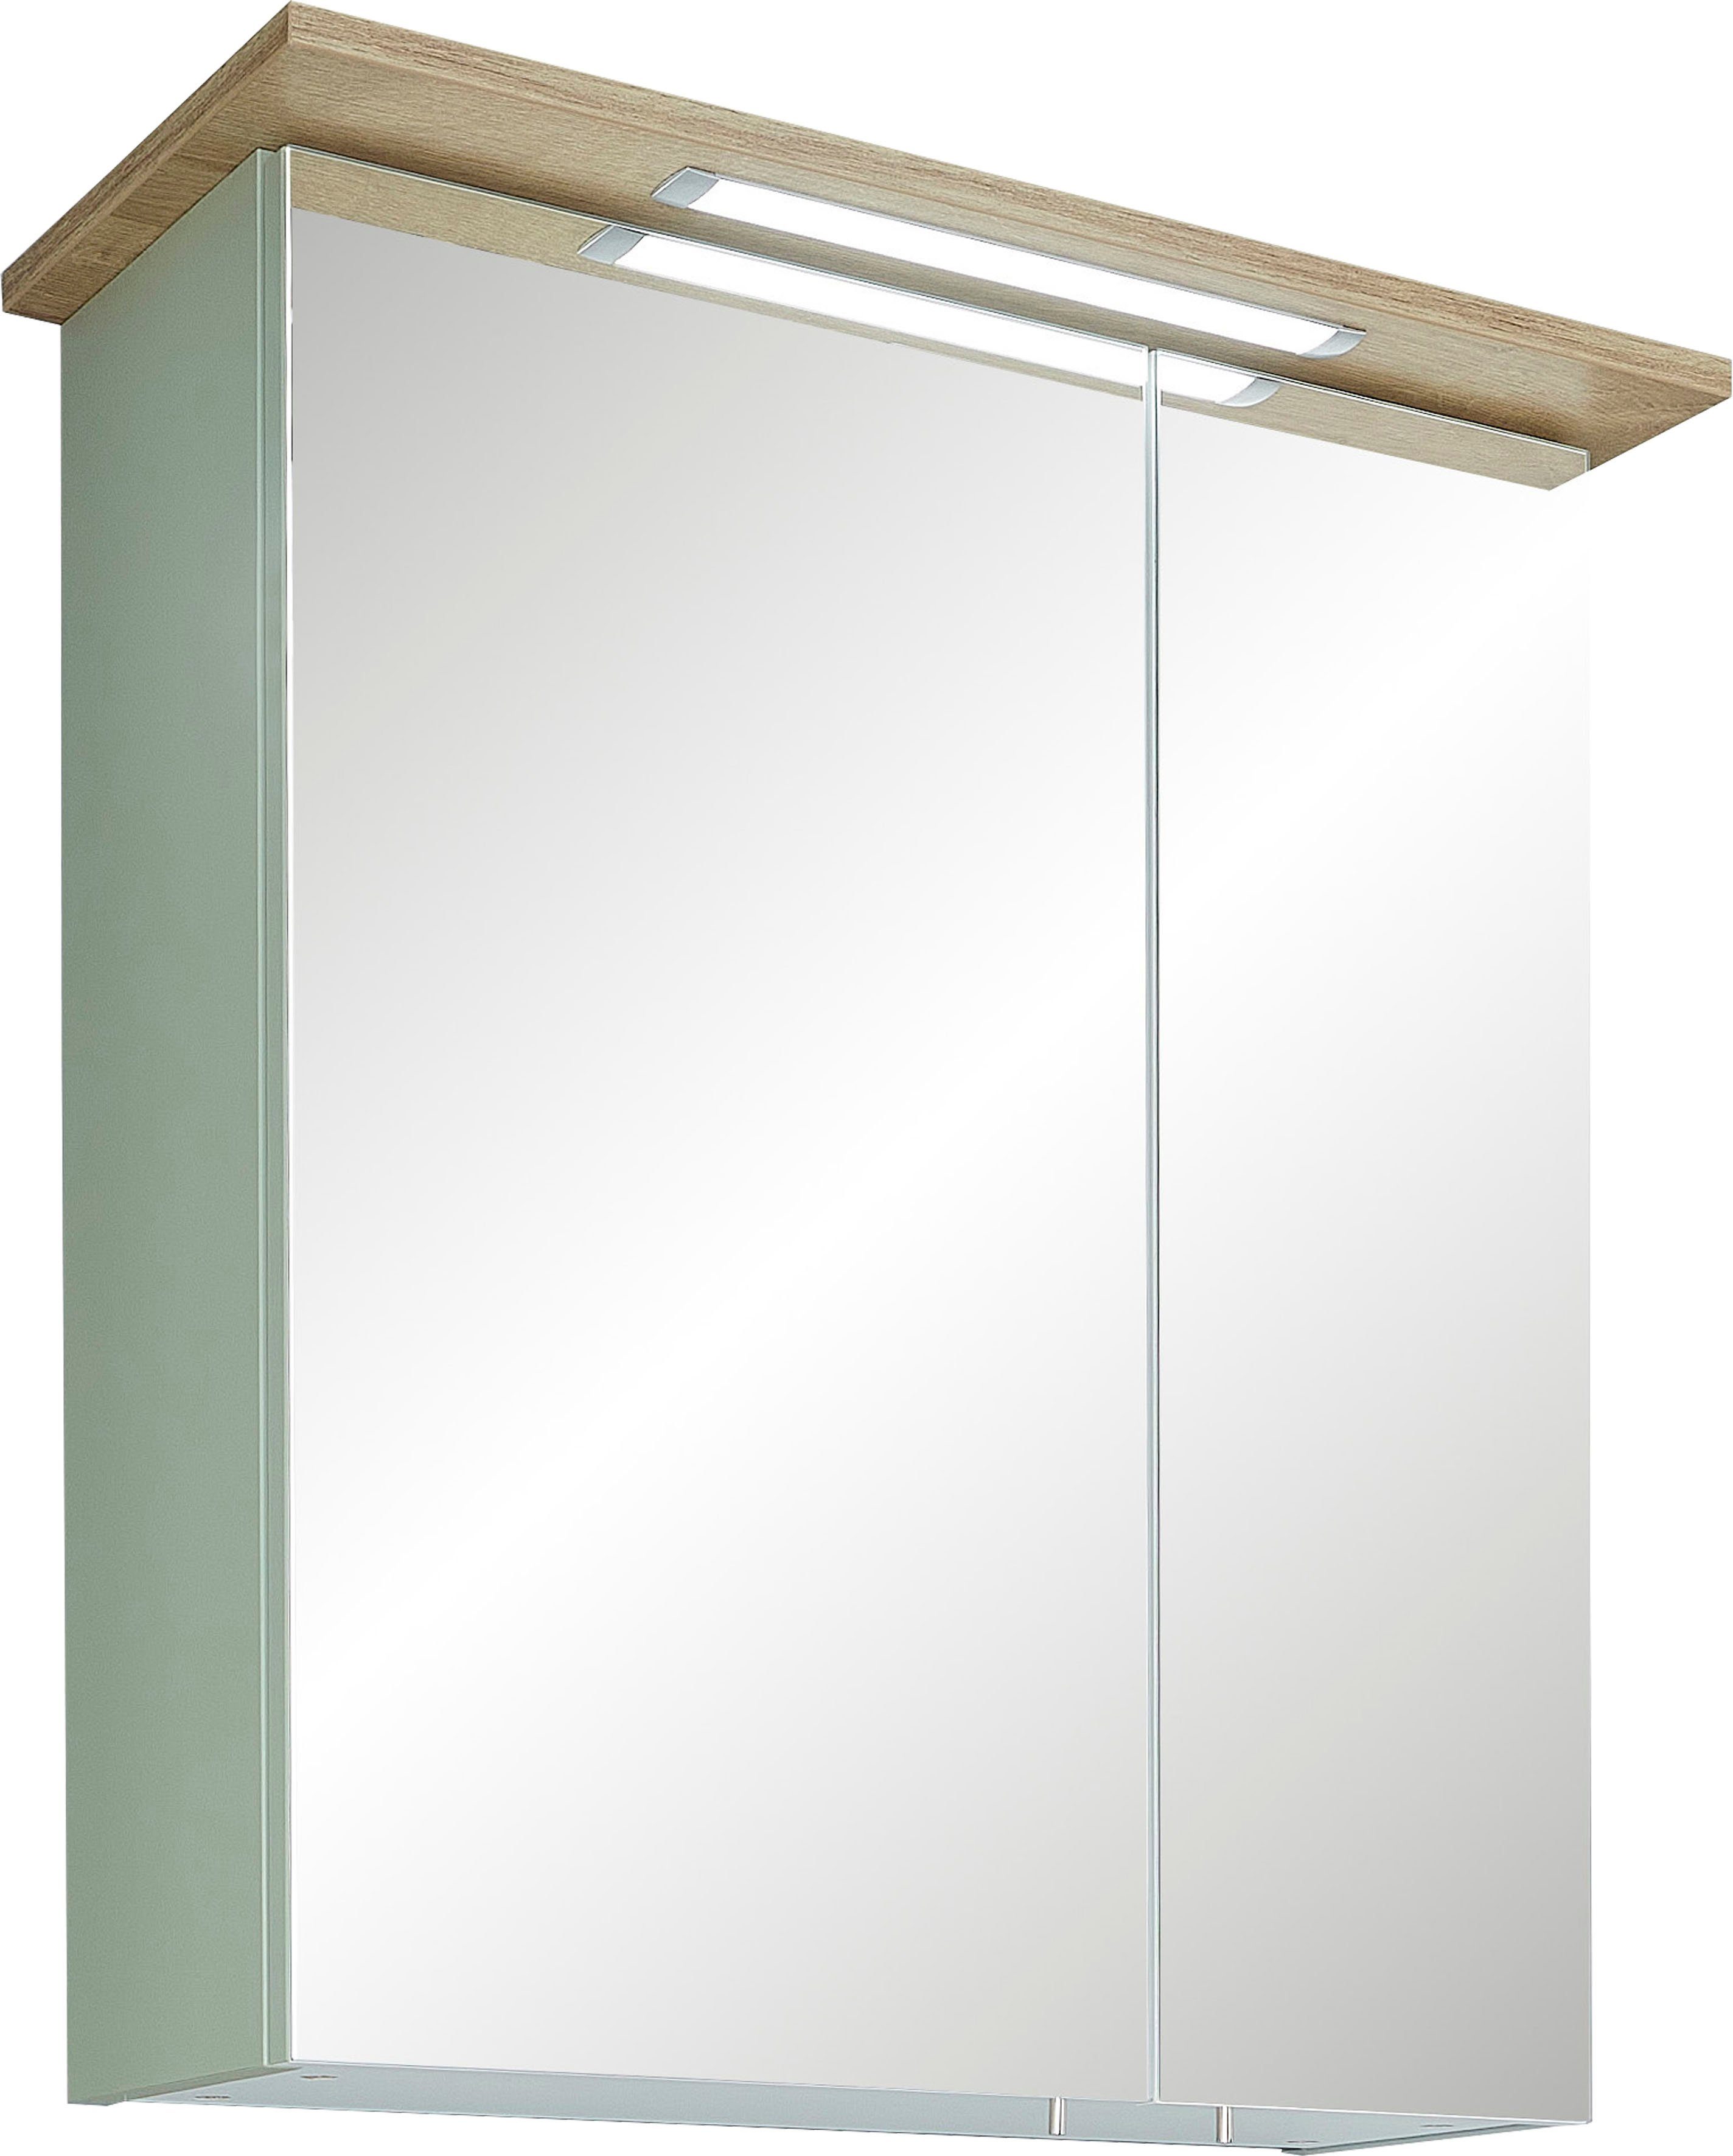 PELIPAL Spiegelkast Quickset 963 Breedte 60 cm, 2-deurs, verzonken ledverlichting, schakelaar/contactdoos, deurdemper